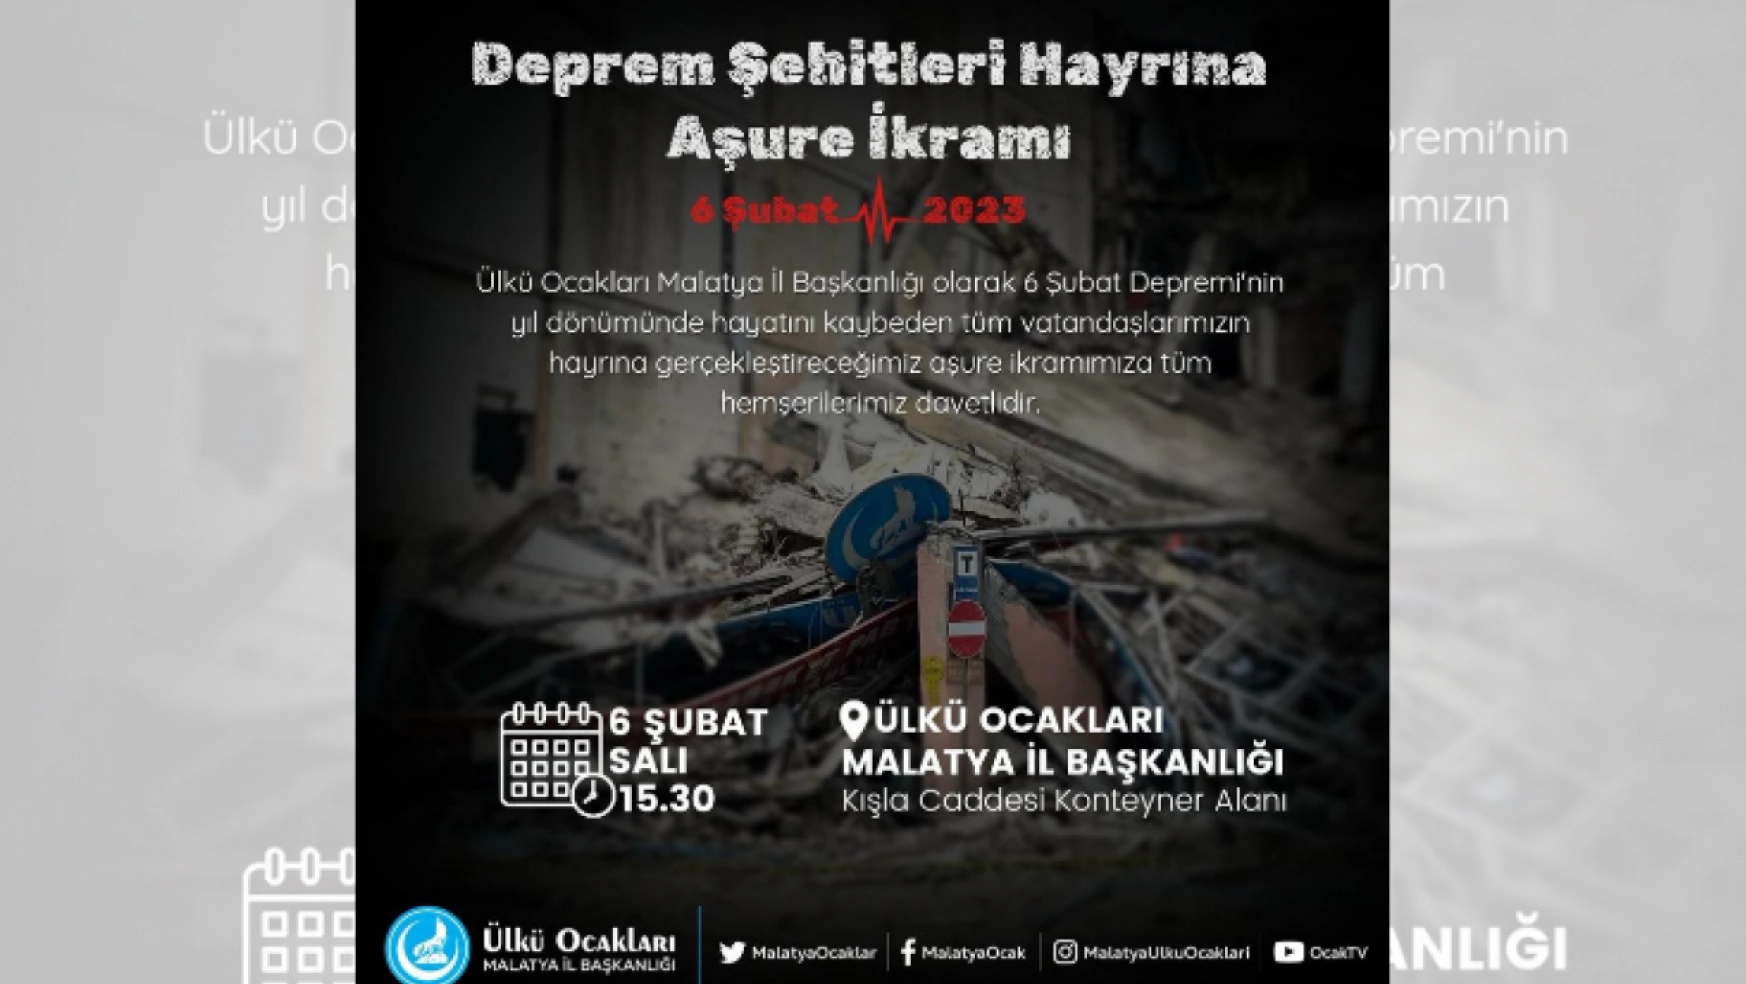 Deprem Şehitleri Hayrına Kur'an-ı Kerim Tilaveti ve Aşure Programı Düzenleyecek